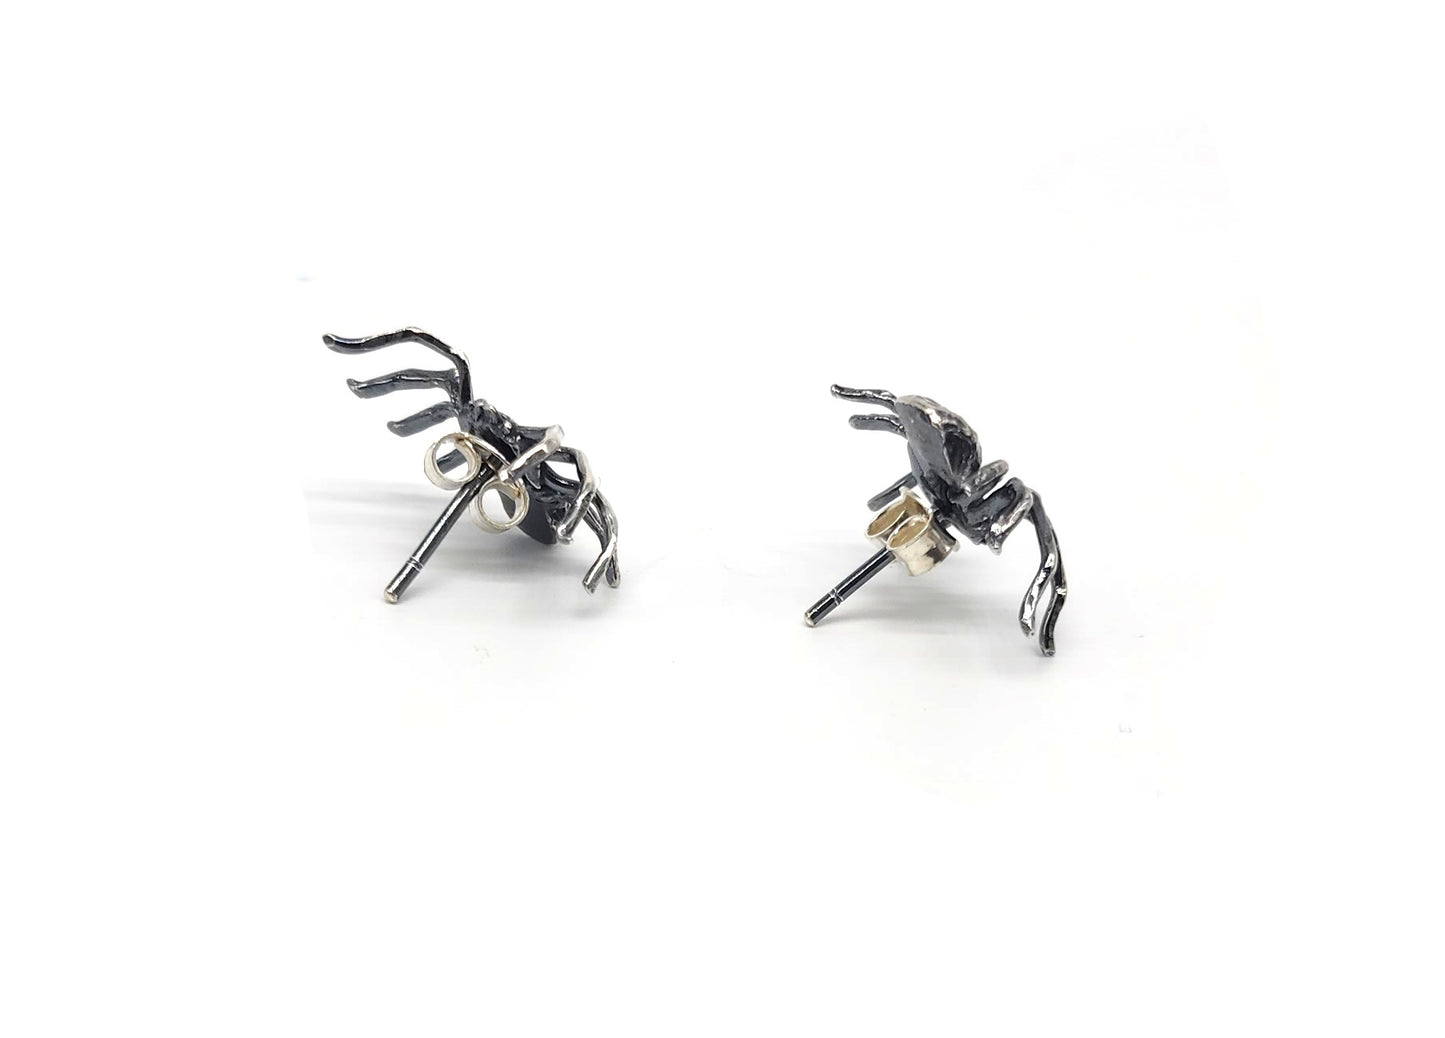 Spider Skull Earrings